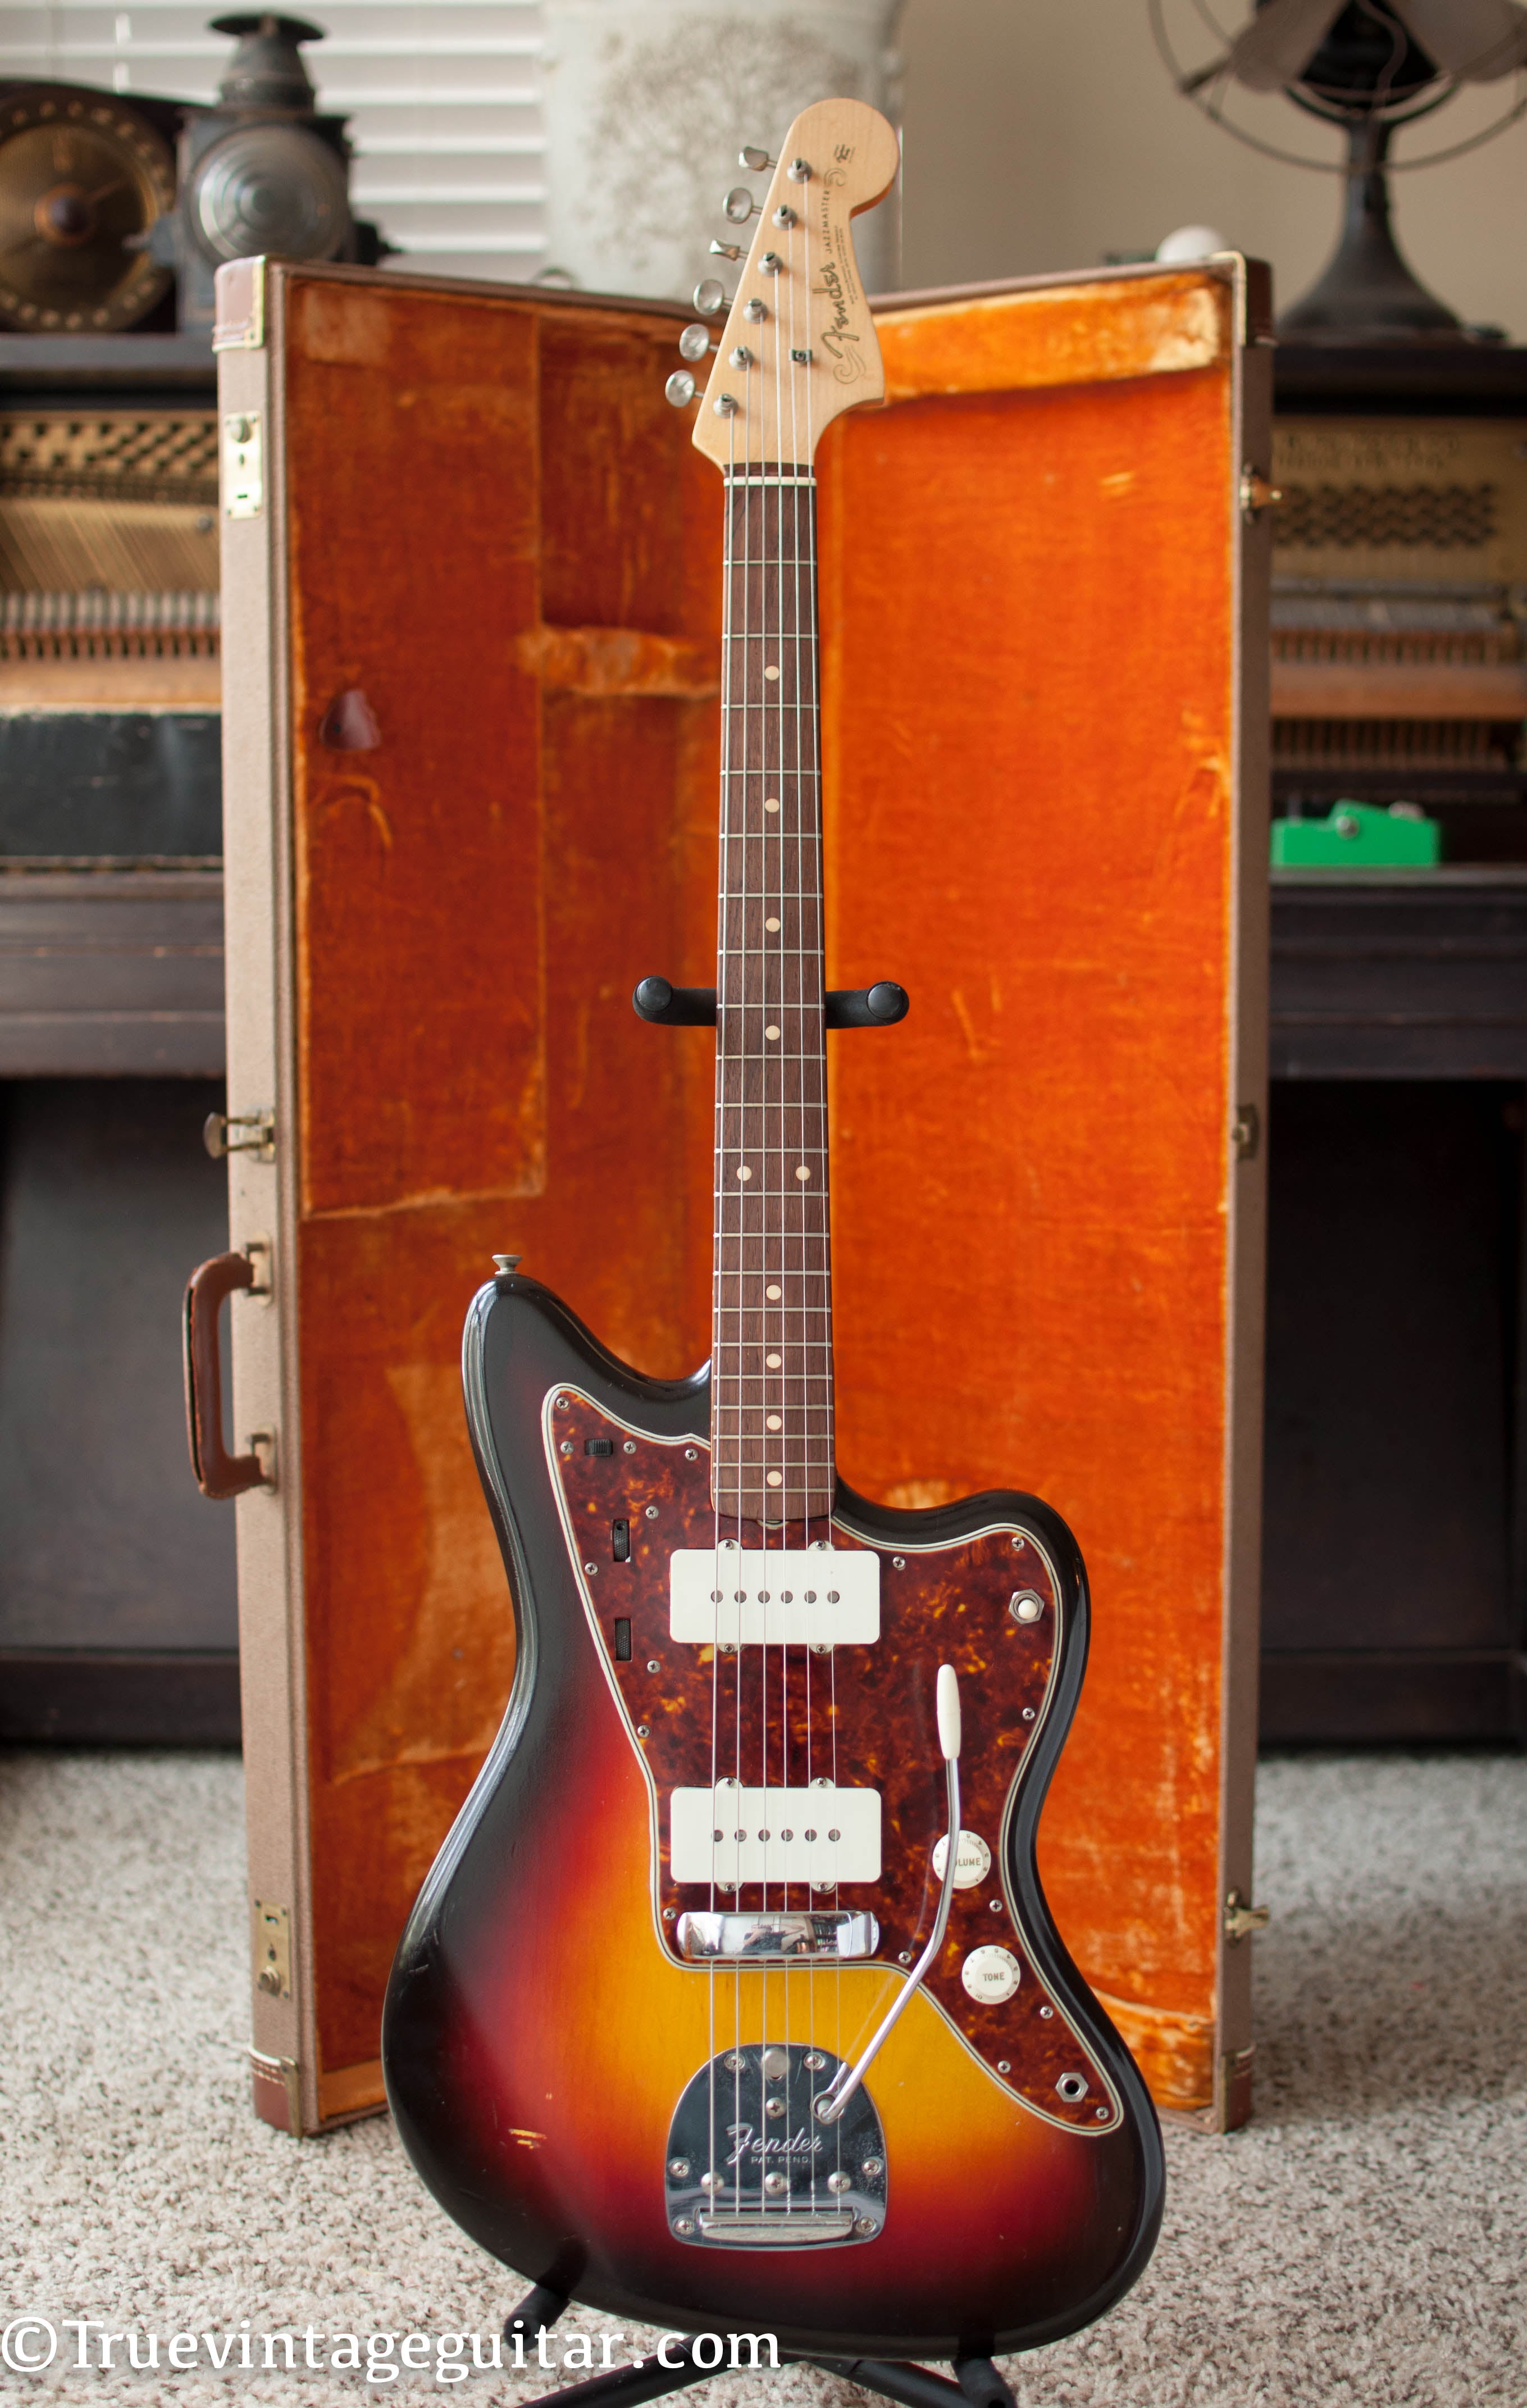 1961 Fender Jazzmaster vintage guitar